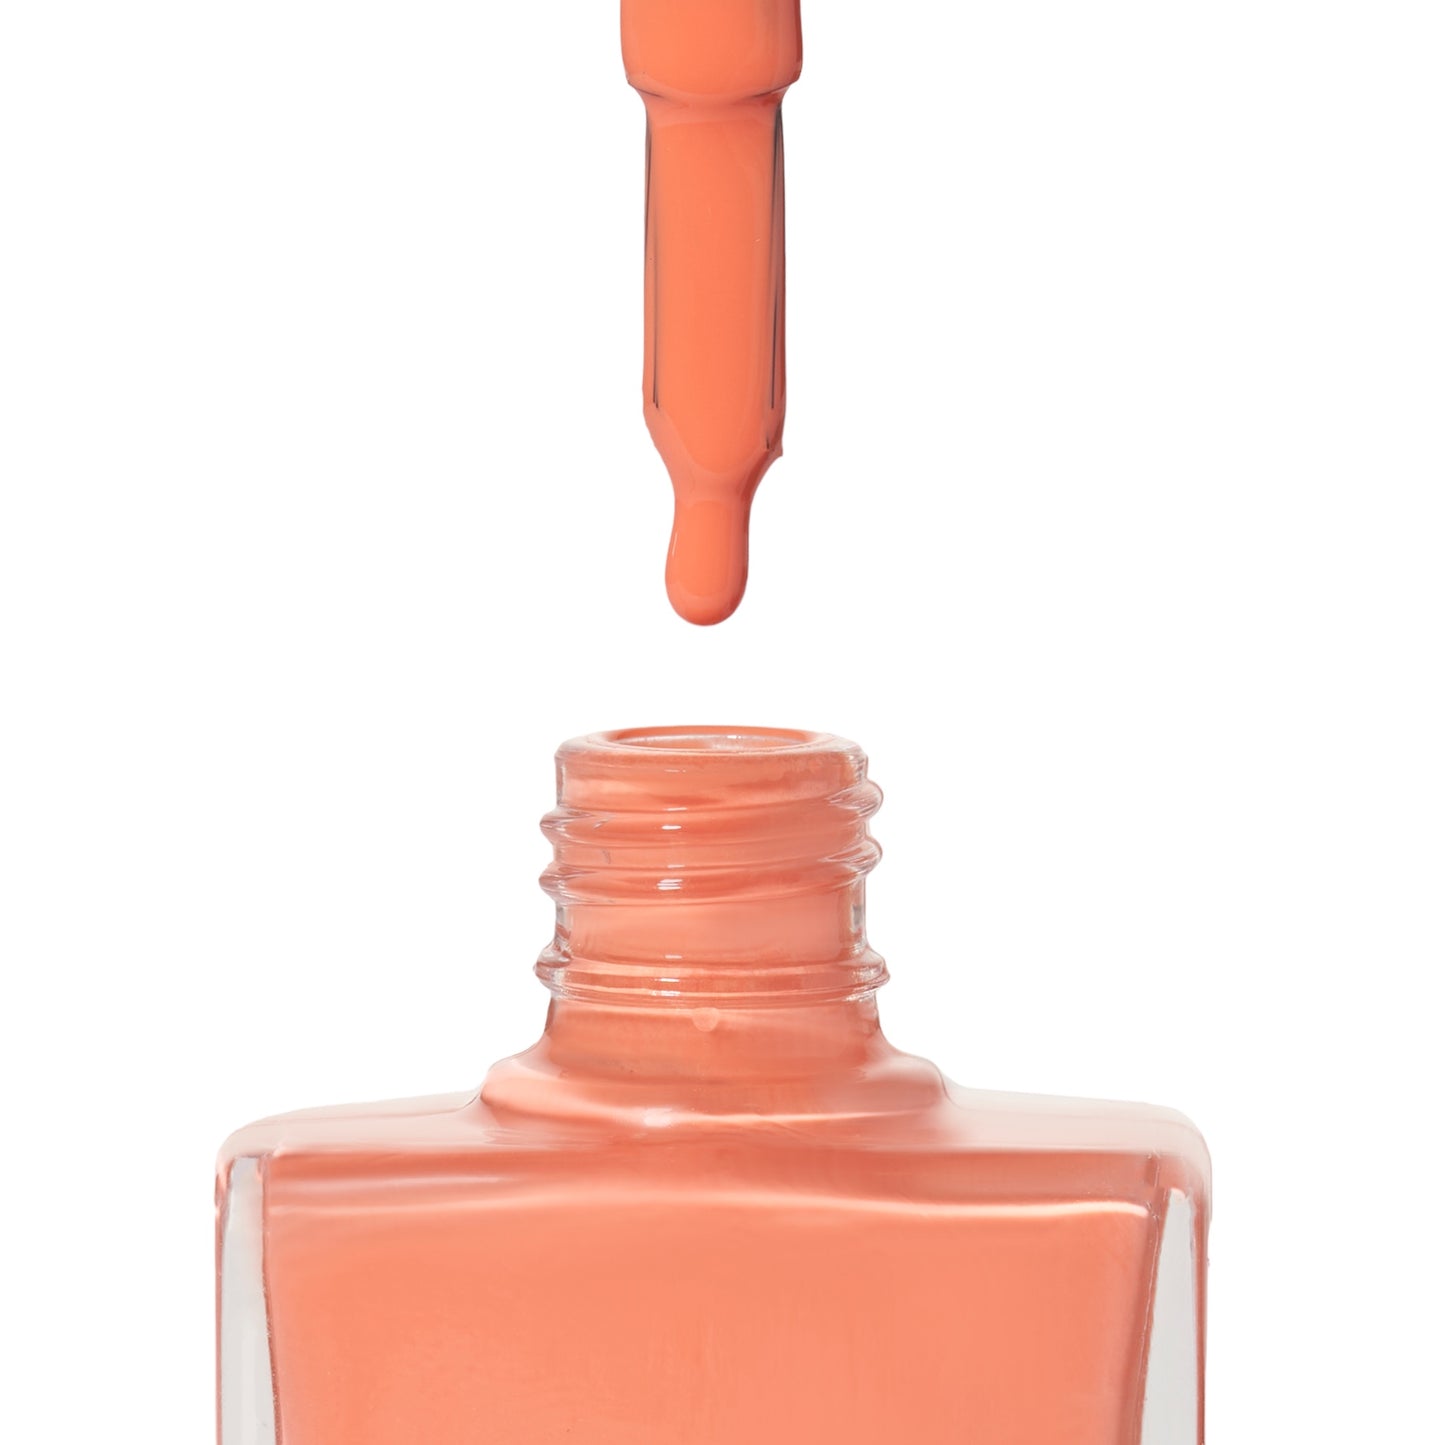 A bottle of Ibizan Sunset, an orange shade from True Nail Polish